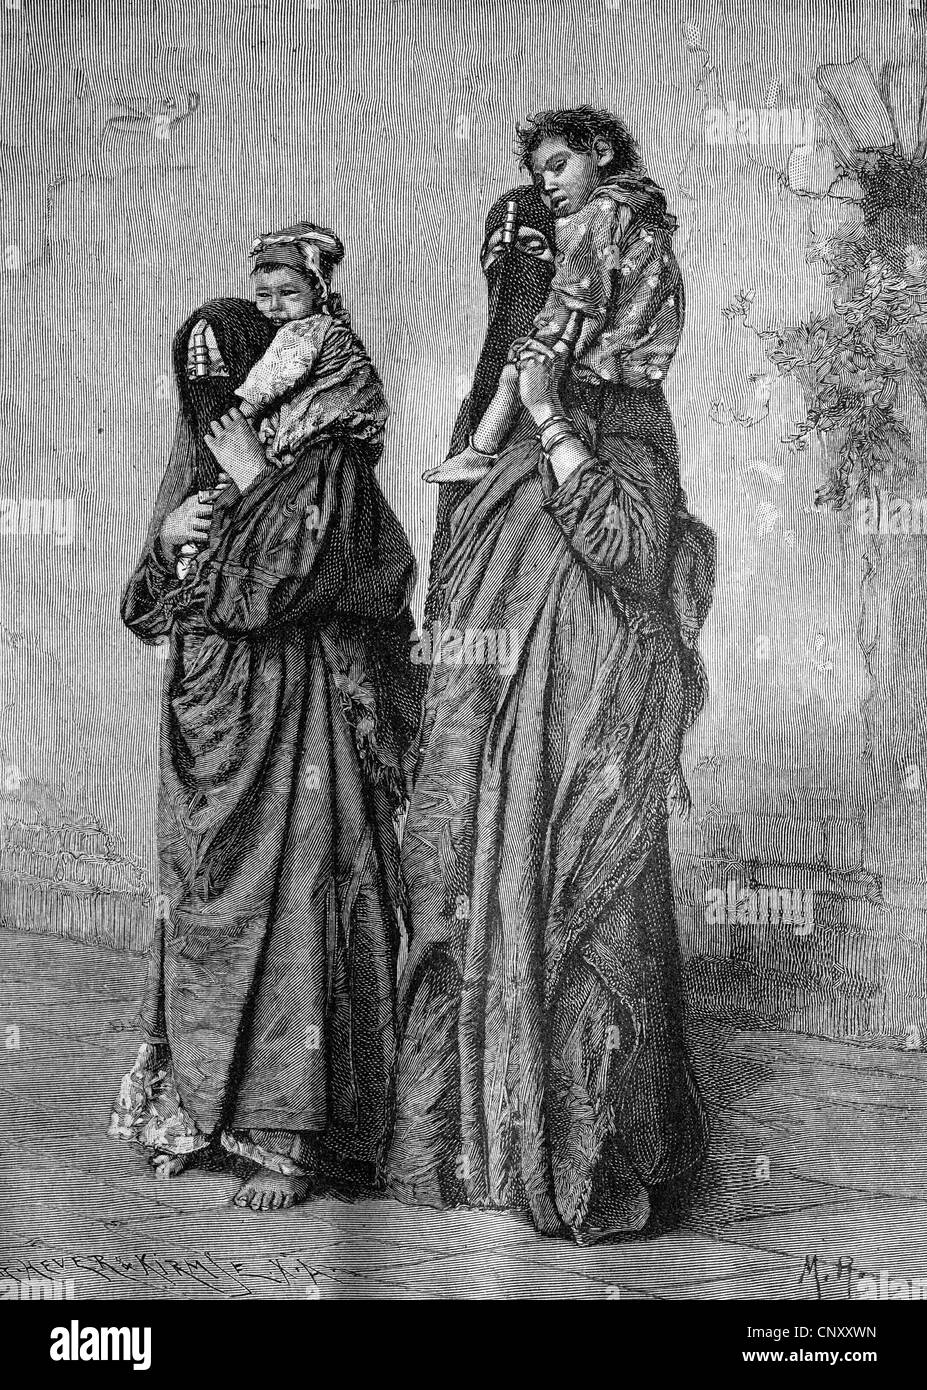 Les égyptiens, les femmes et leurs enfants, historique de la gravure sur bois, vers 1897 Banque D'Images